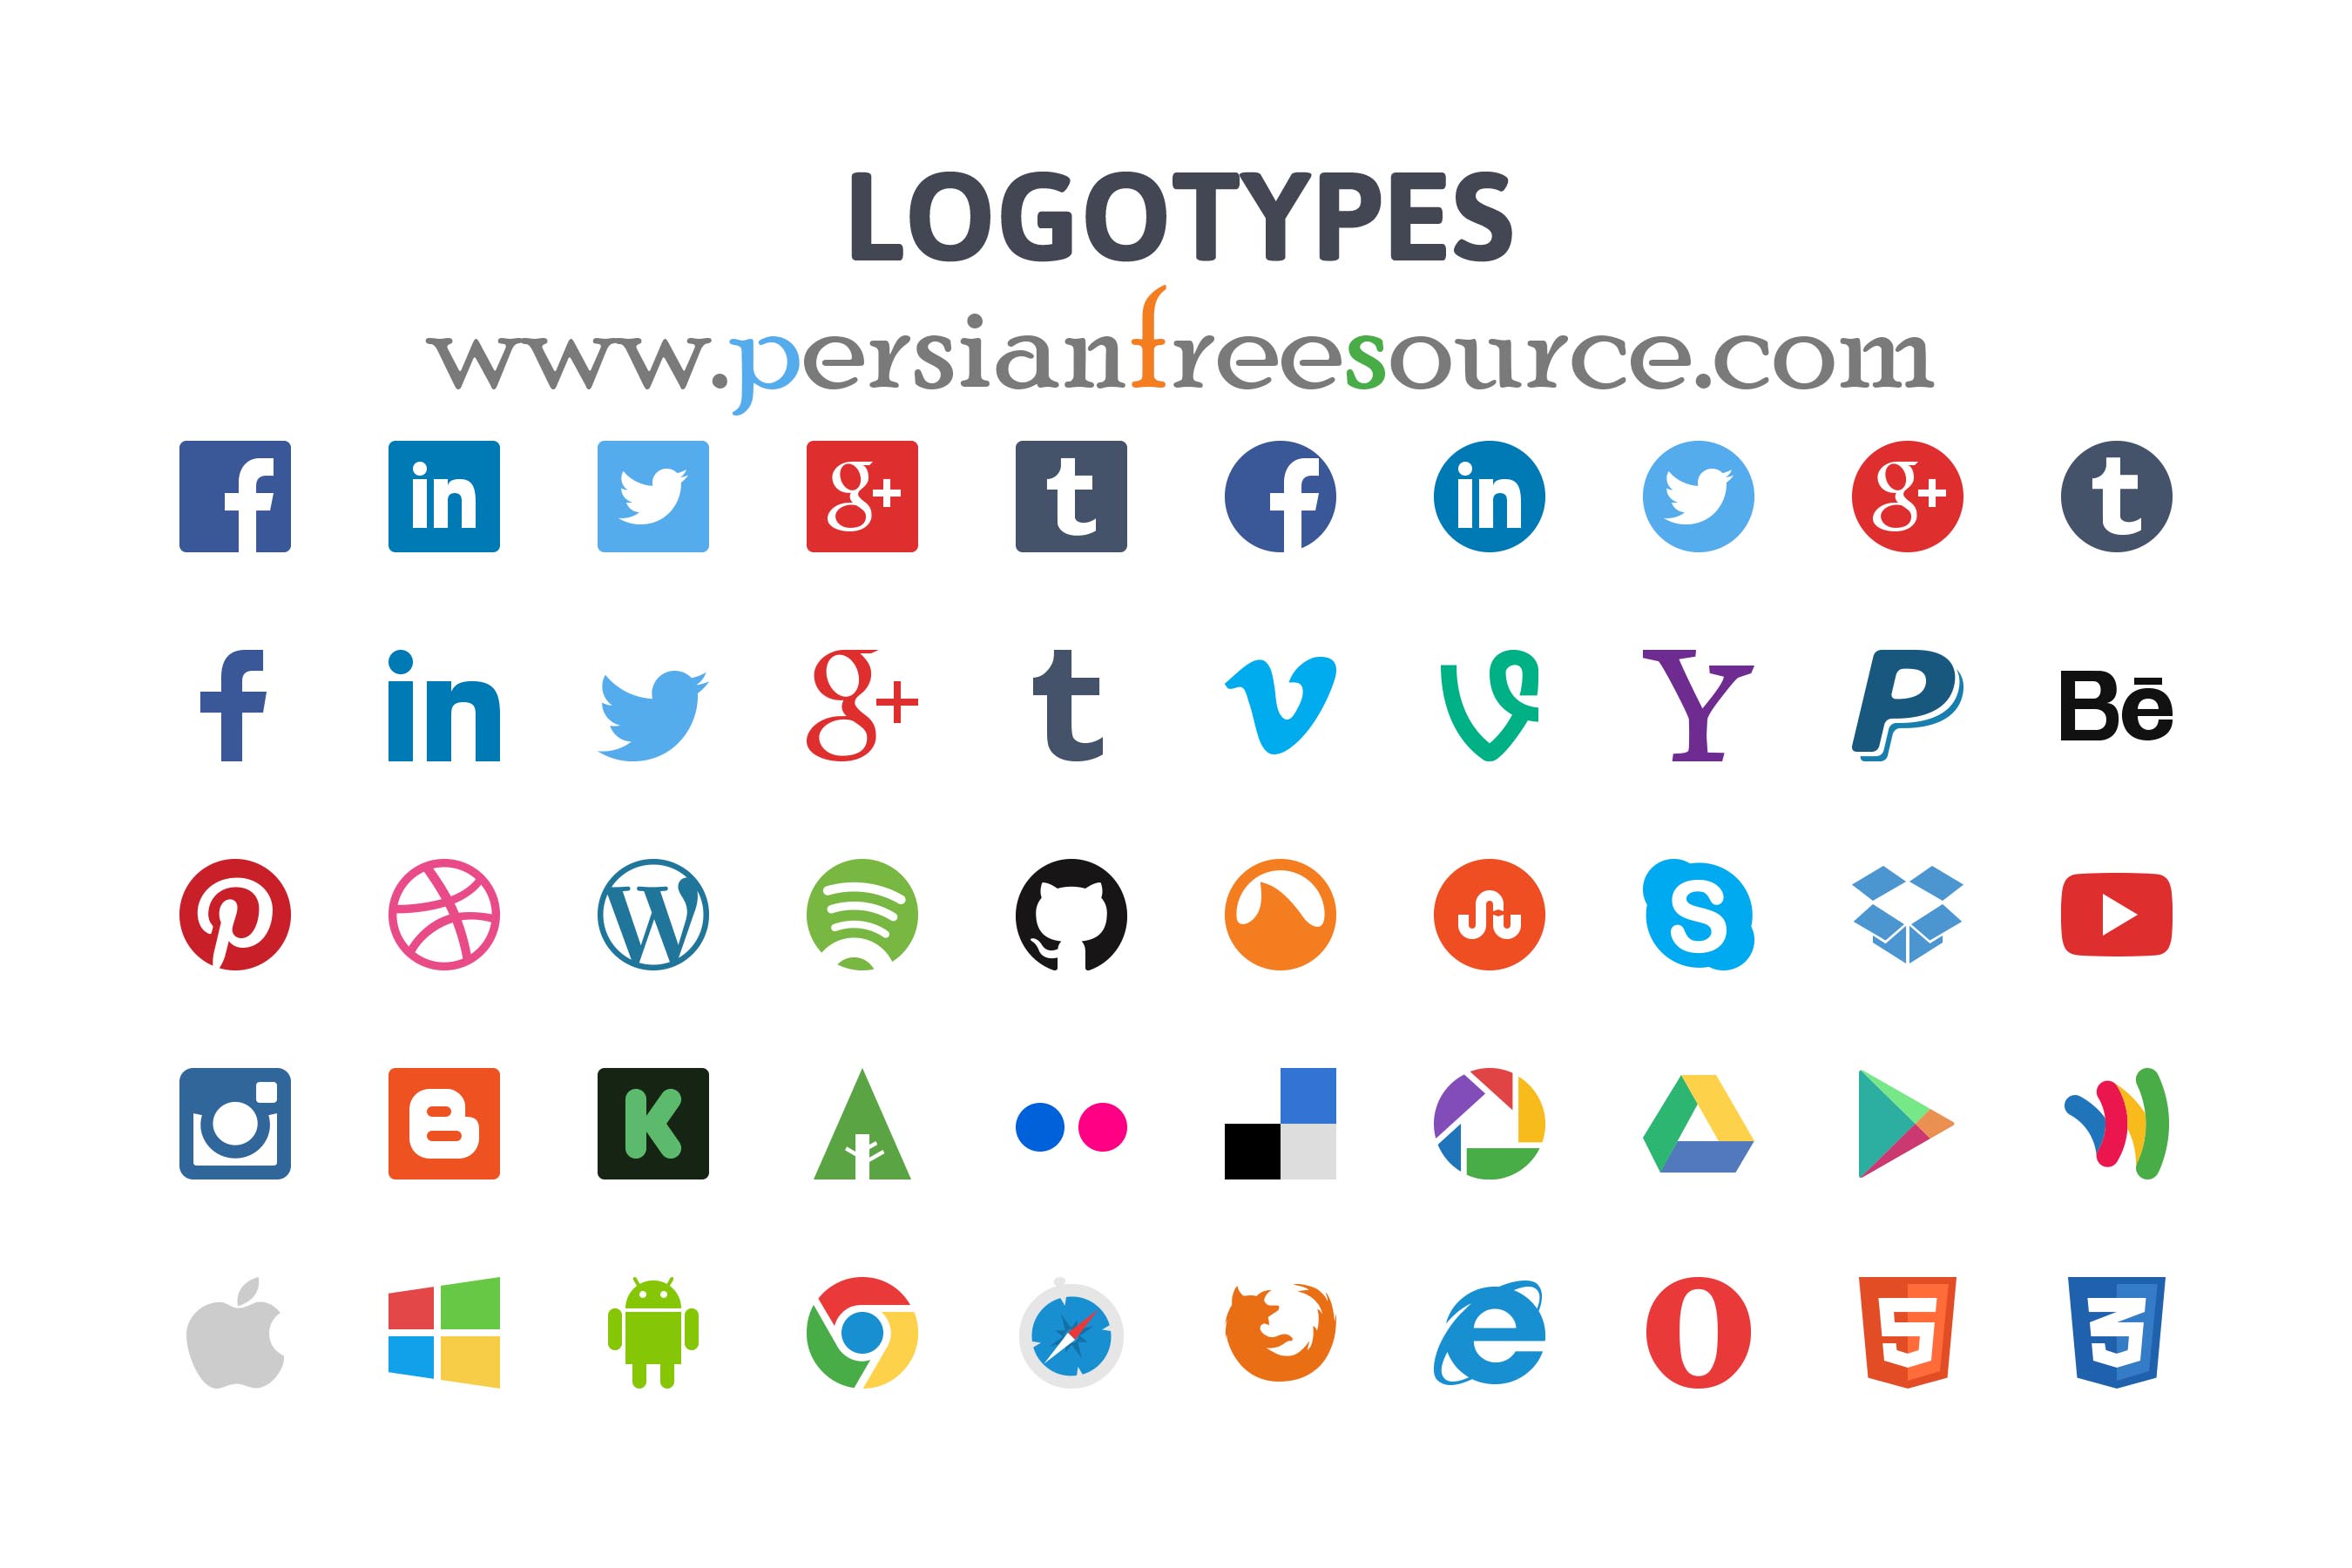 دانلود وکتور آیکون شبکه های اجتماعی | Flat Icons Logotypes